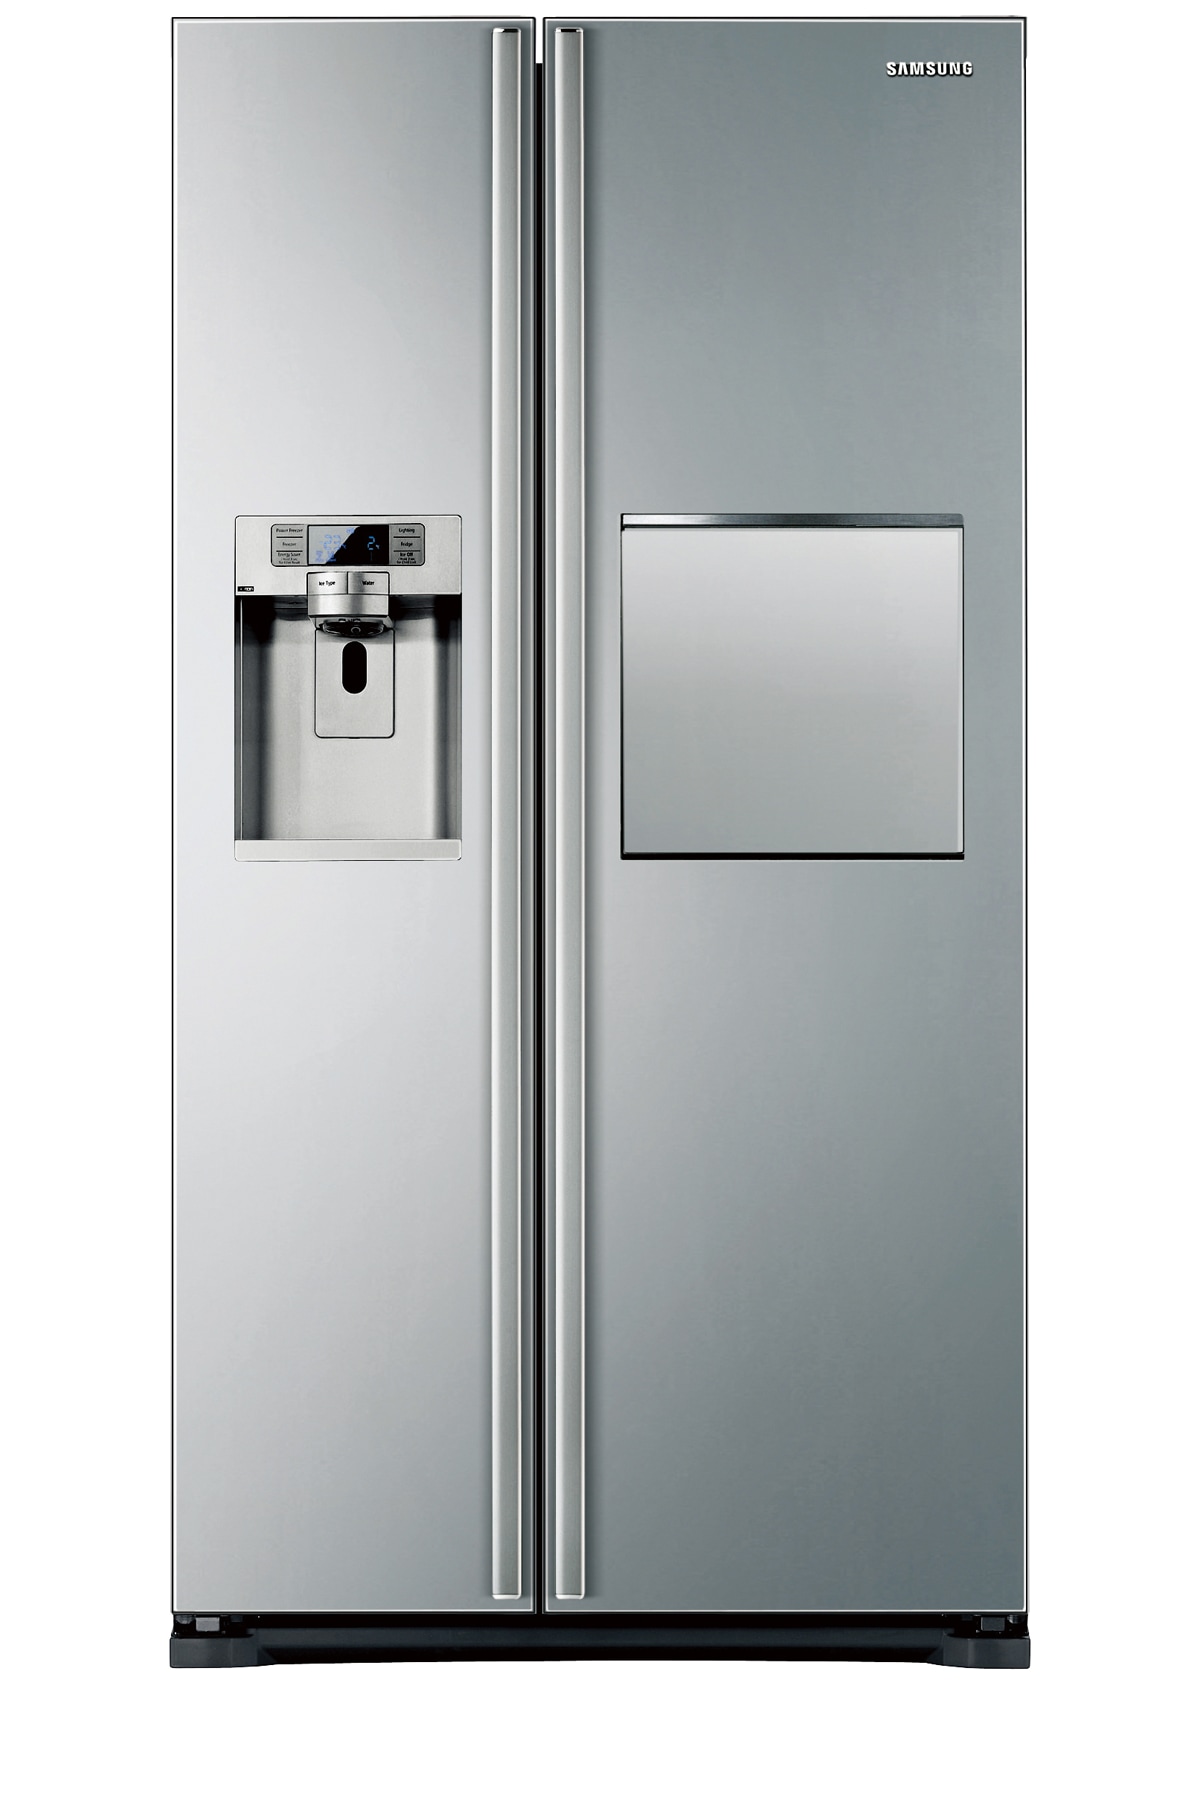 Side by Side Fridge Freezer (683L) | Samsung Australia1200 x 1800